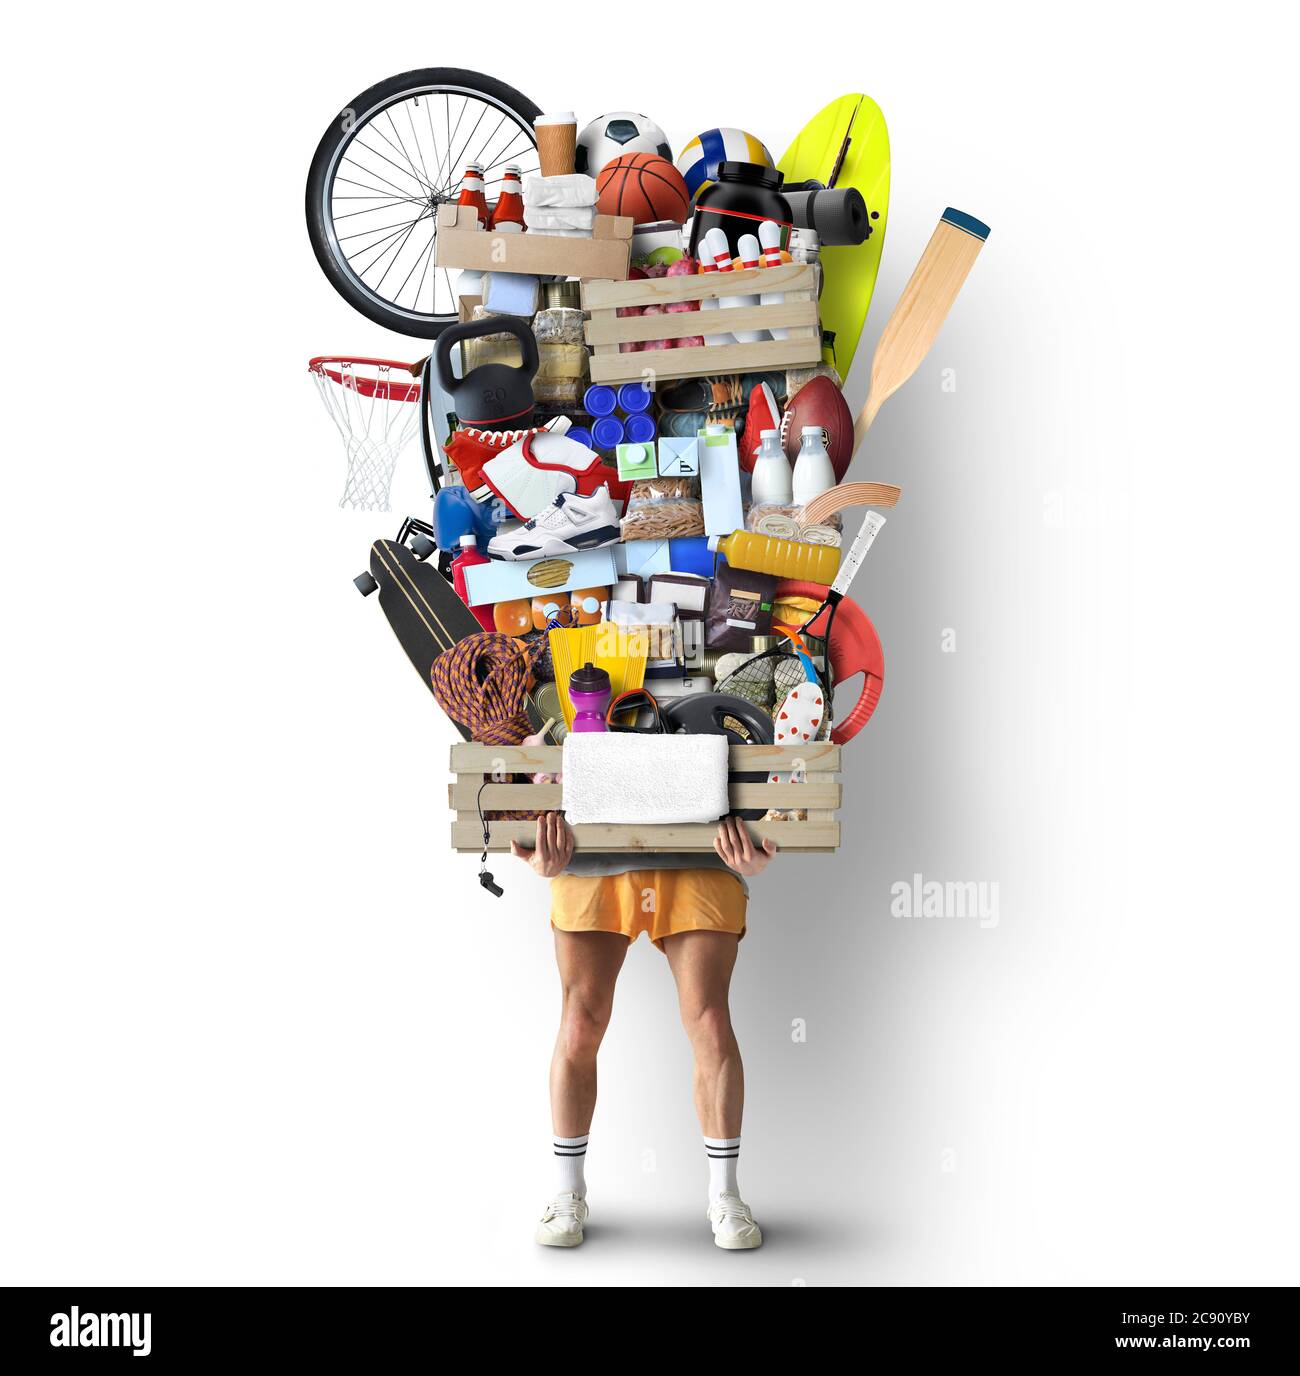 Gesundes Lifestyle-Konzept, hält ein Mann eine Box mit vegetarischen Produkten und Sportgeräten Stockfoto